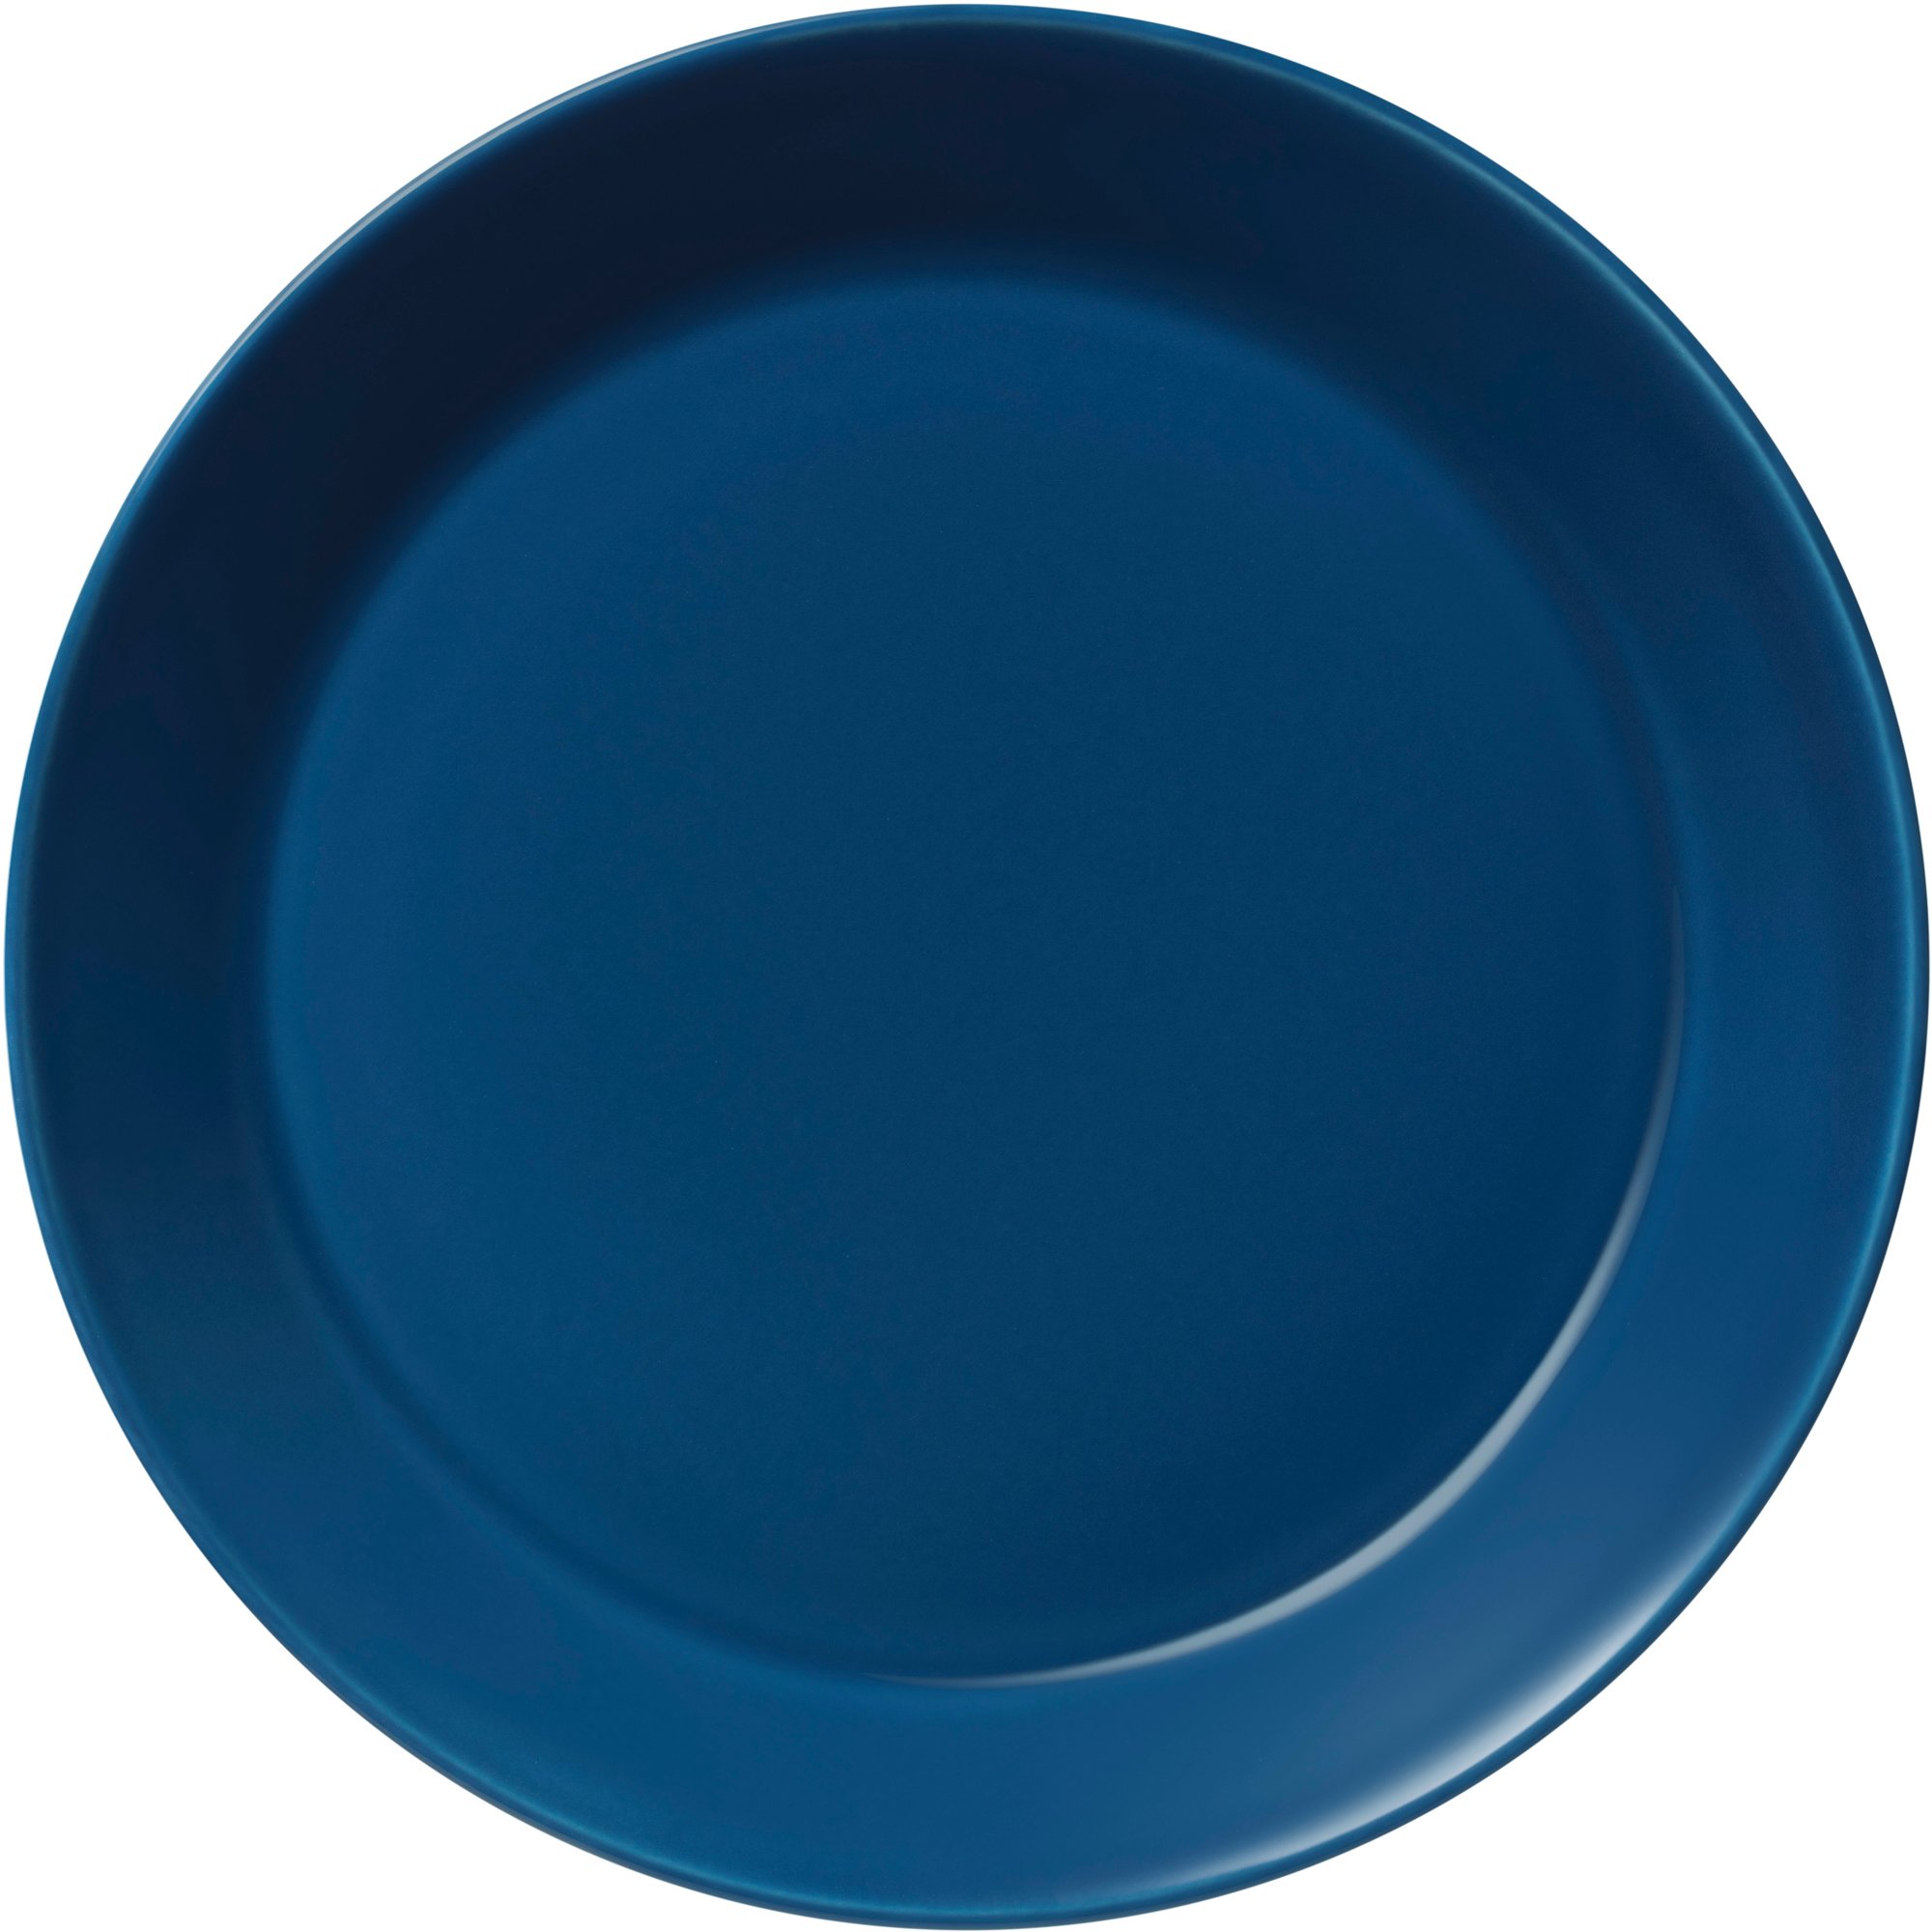 Iittala Teema tallerken, 21 cm, vintage blå